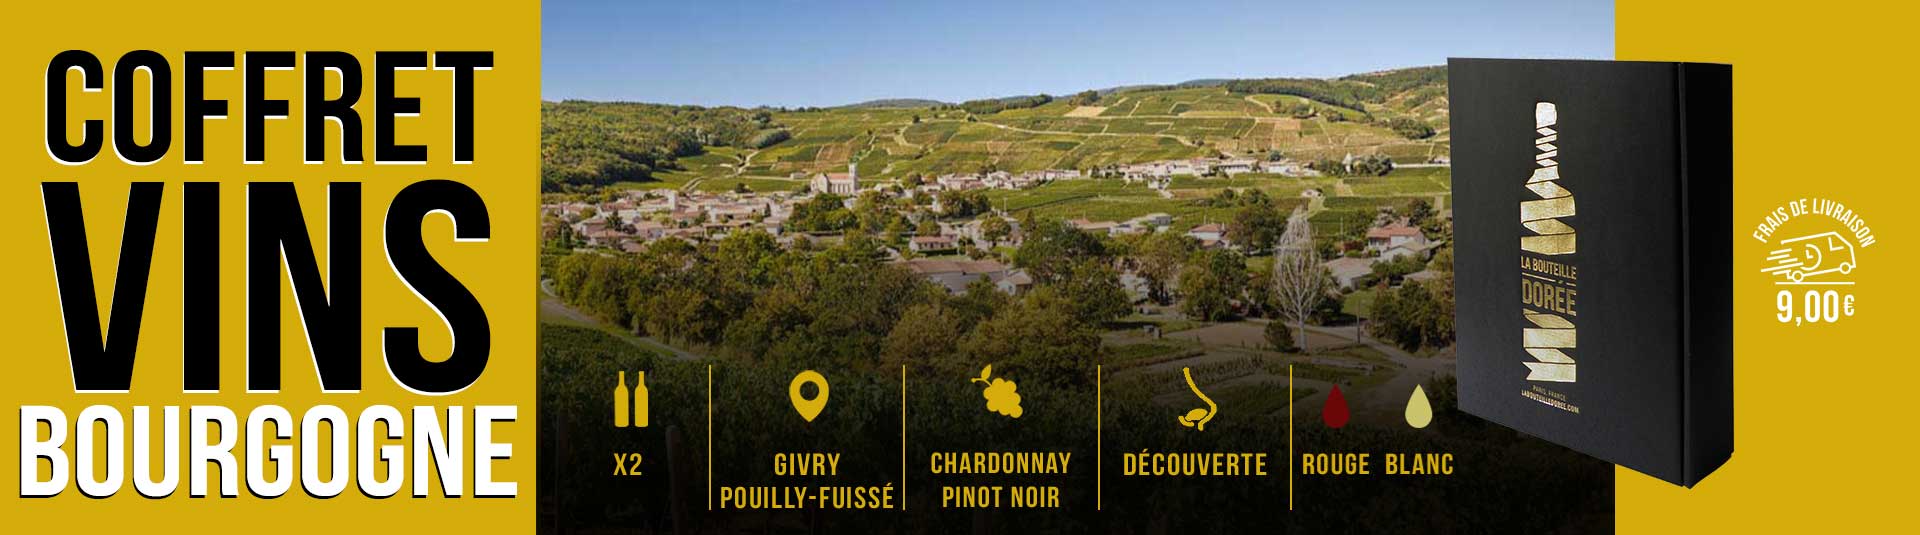 Coffret vin Bourgogne Givry et Pouilly-Fuissé 2 bouteilles